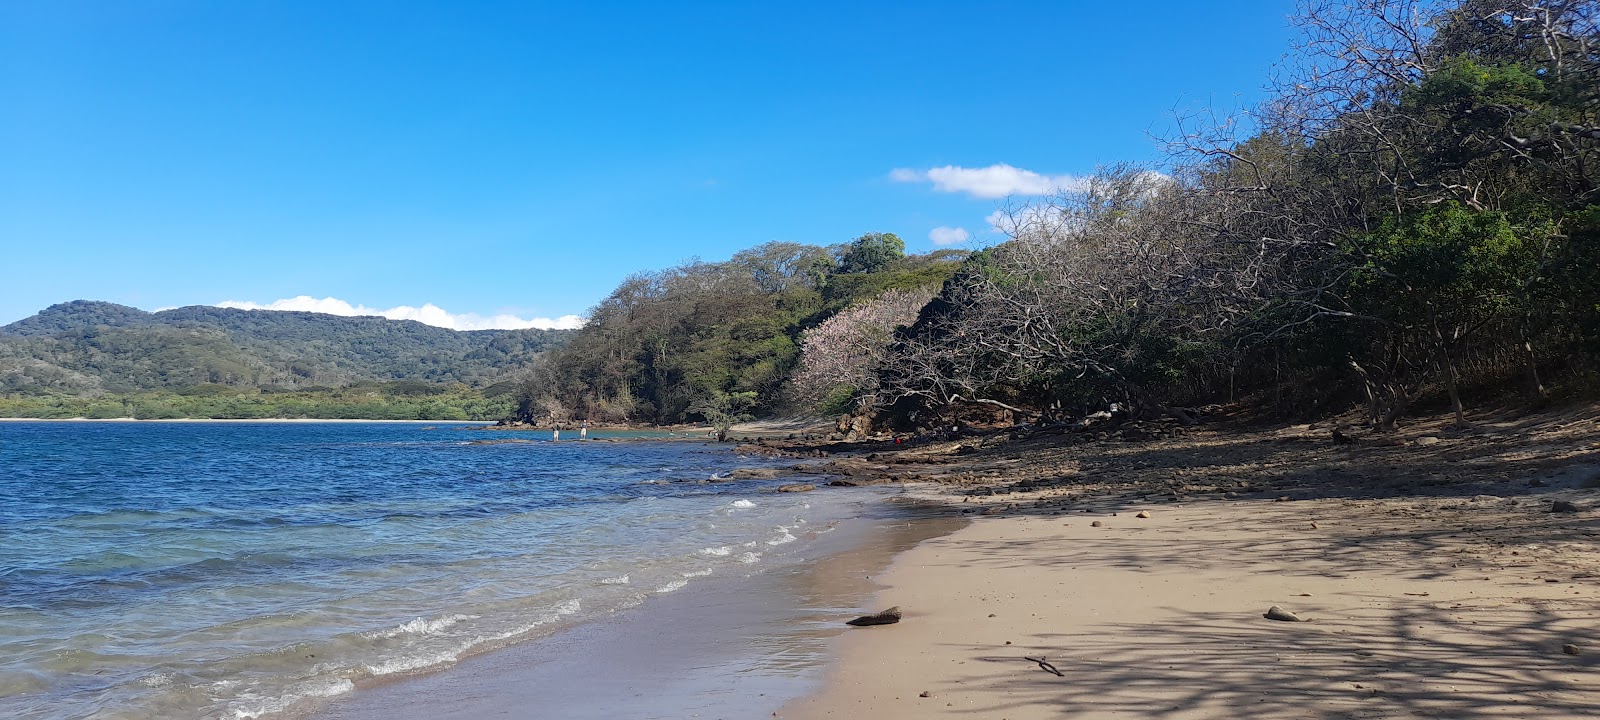 Foto von Playa Escondida mit grauer sand&steine Oberfläche